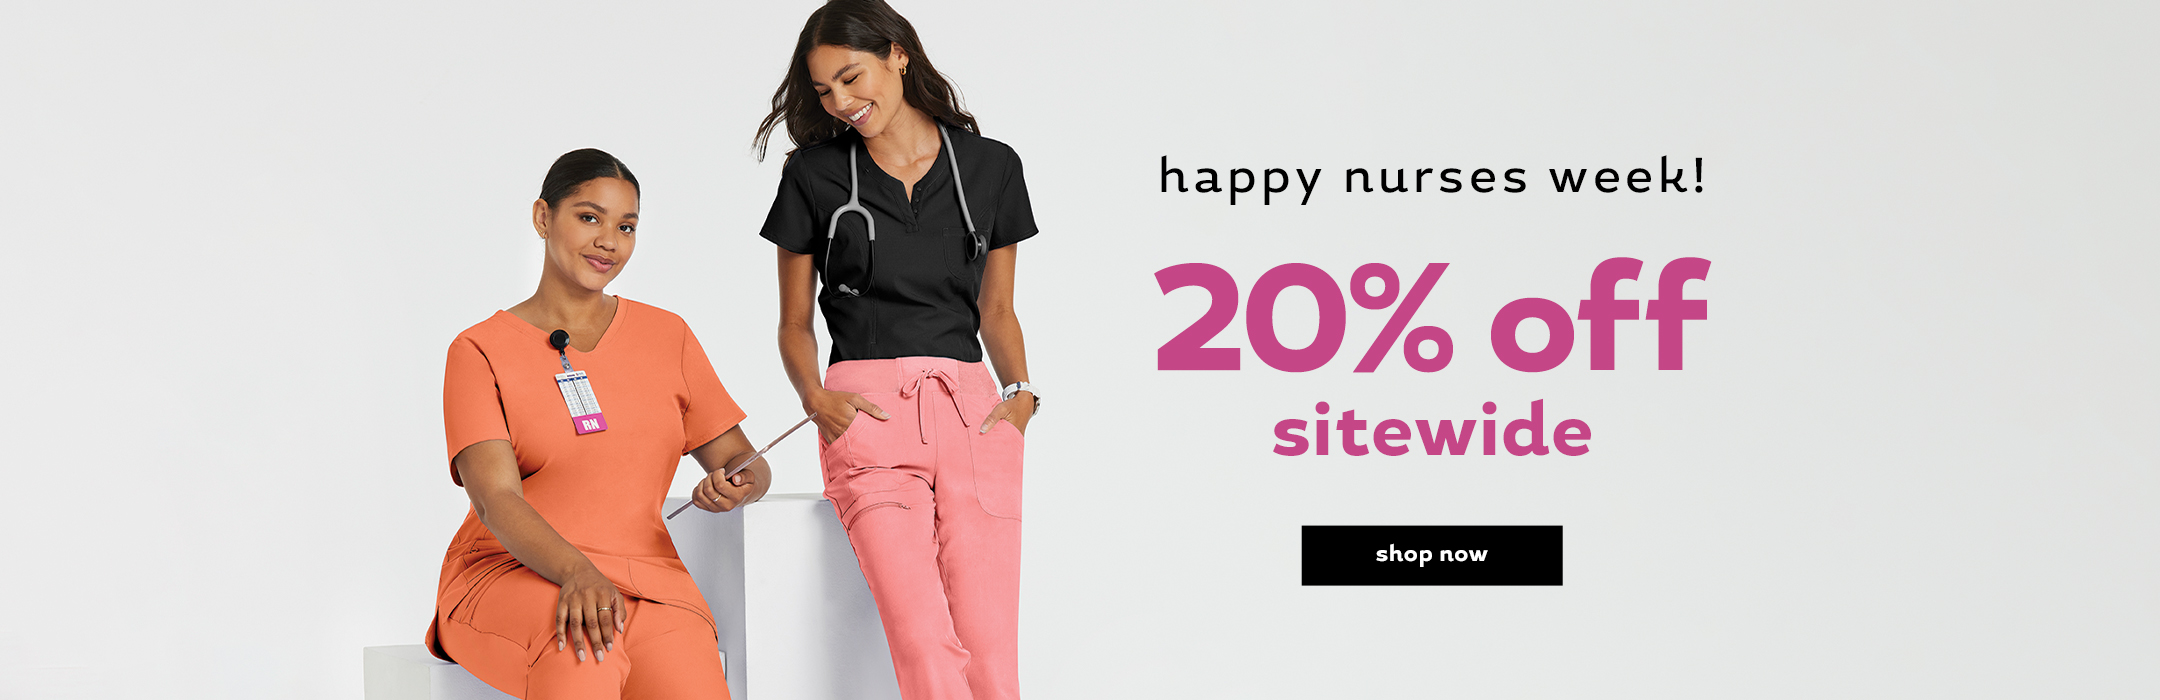 Happy Nurses Week!
20% off sitewide